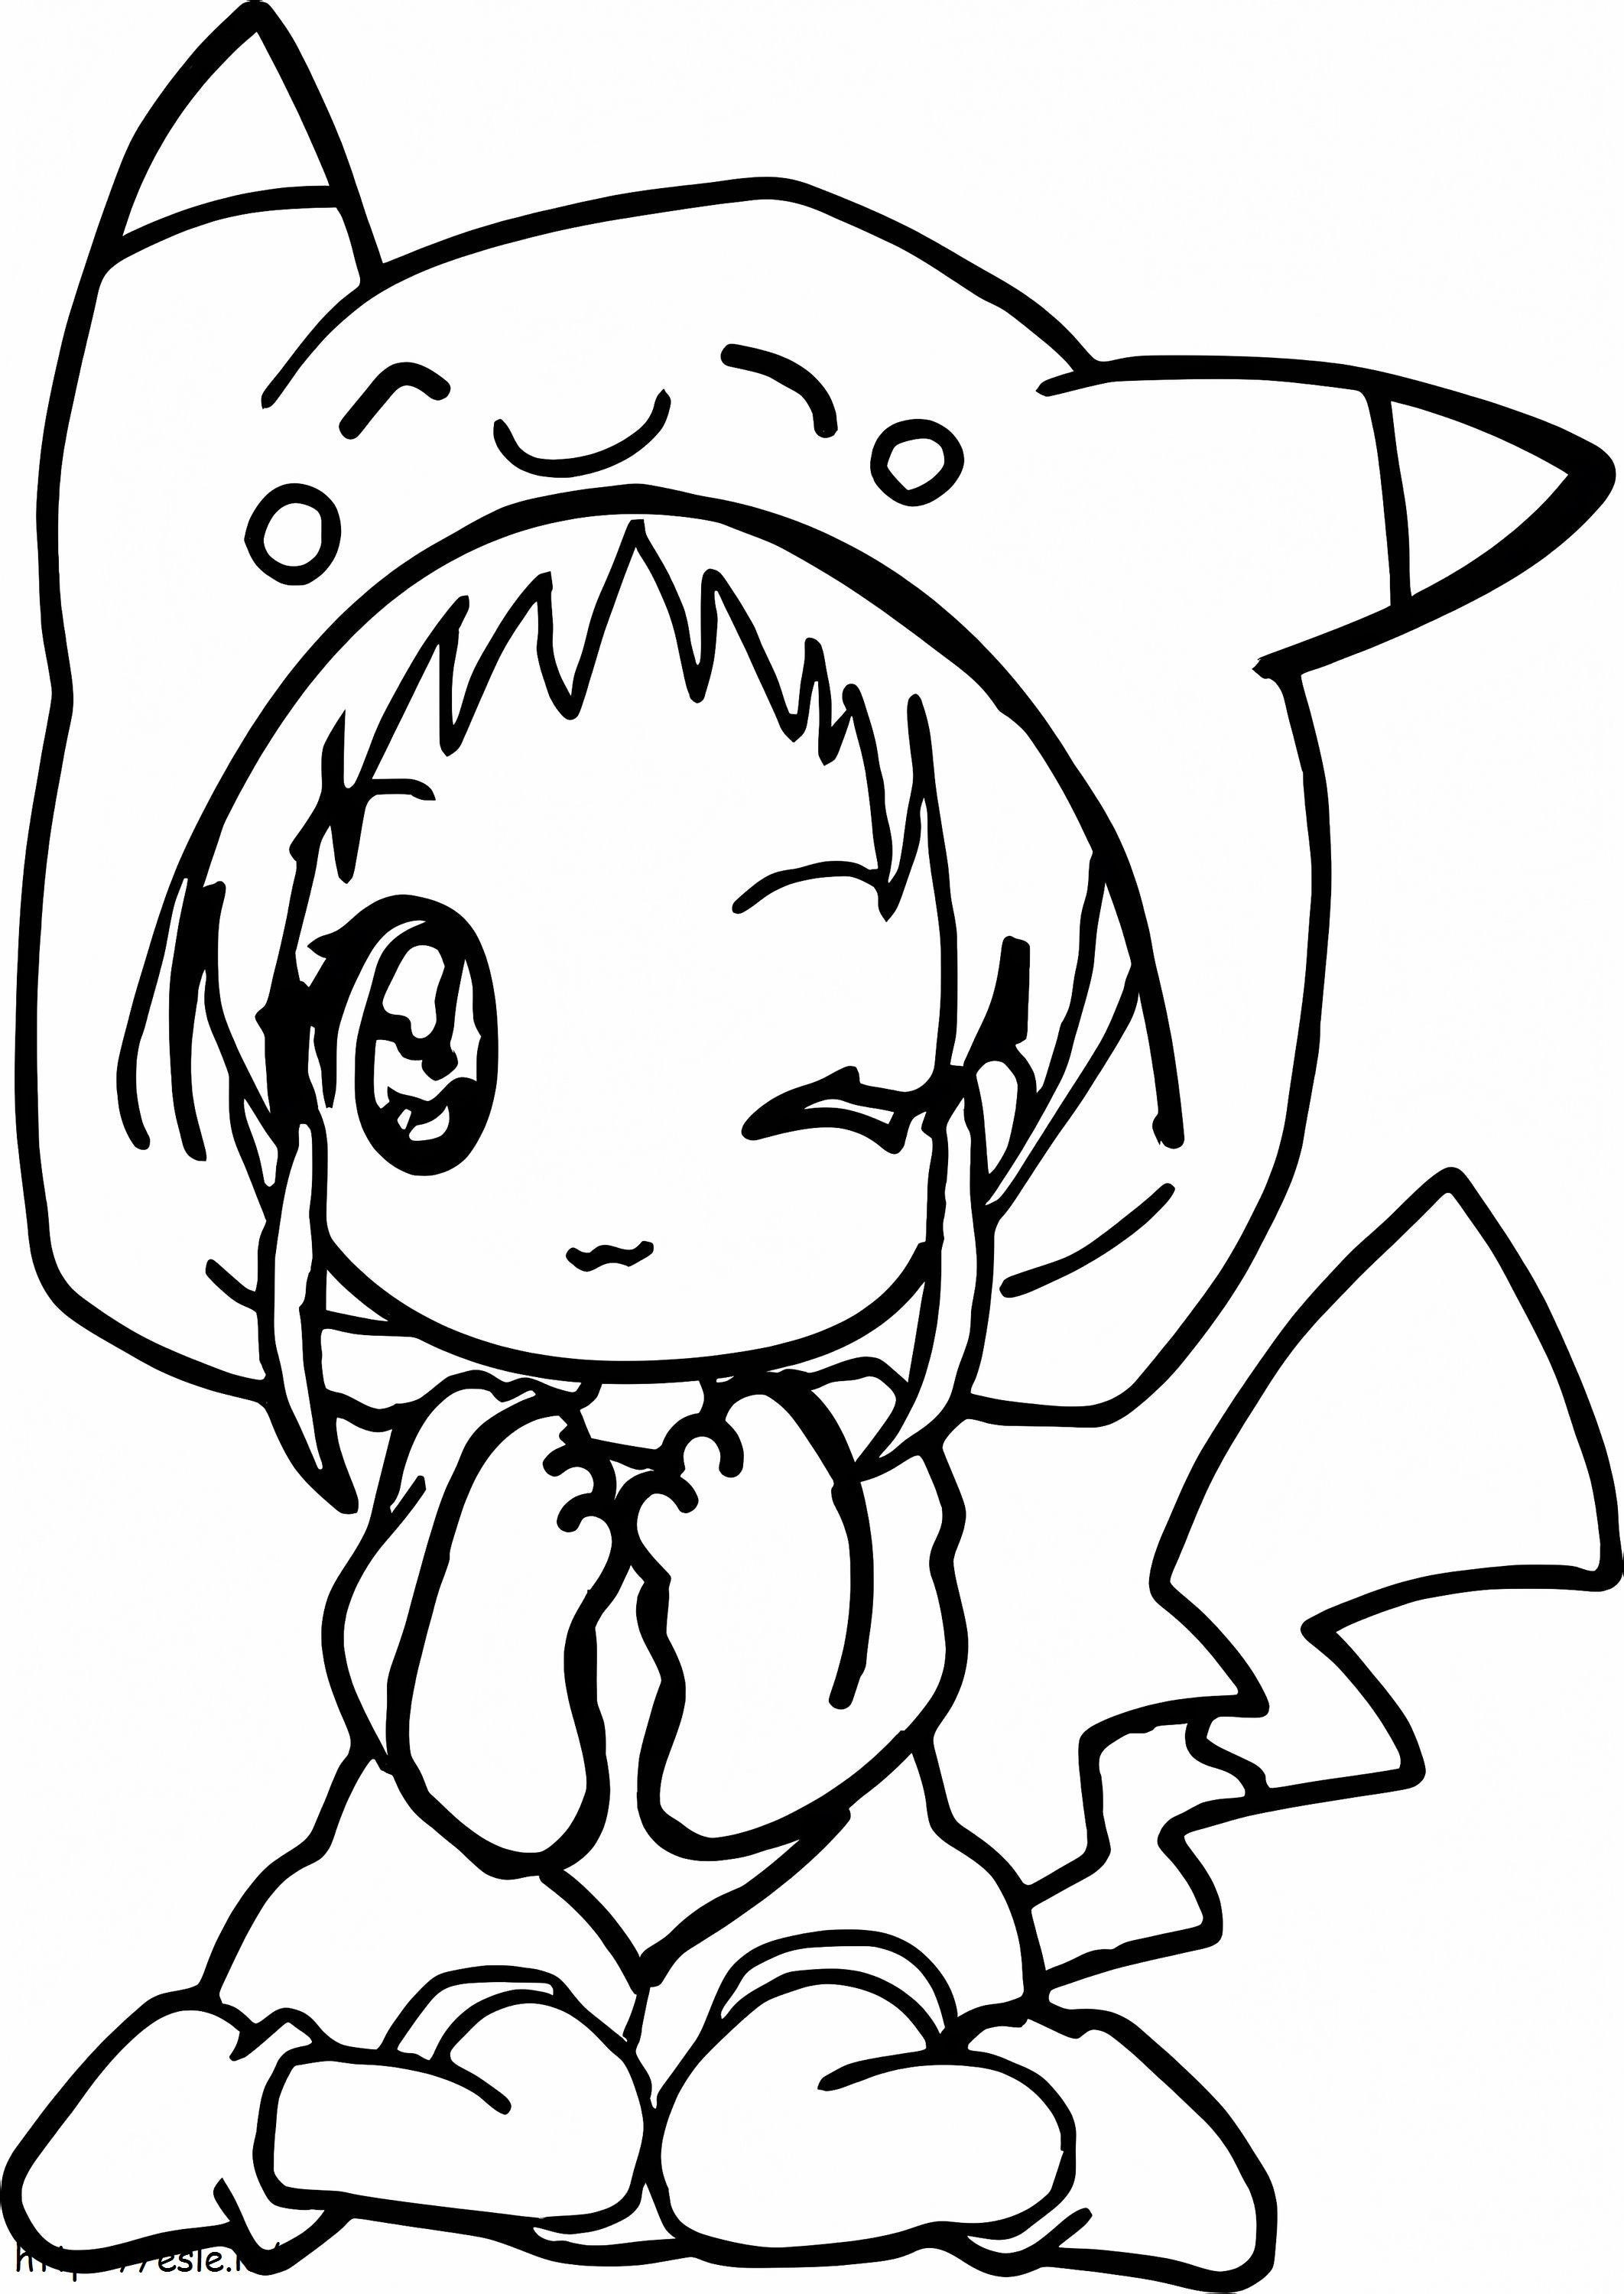 Chica Pikachu Kawaii ausmalbilder